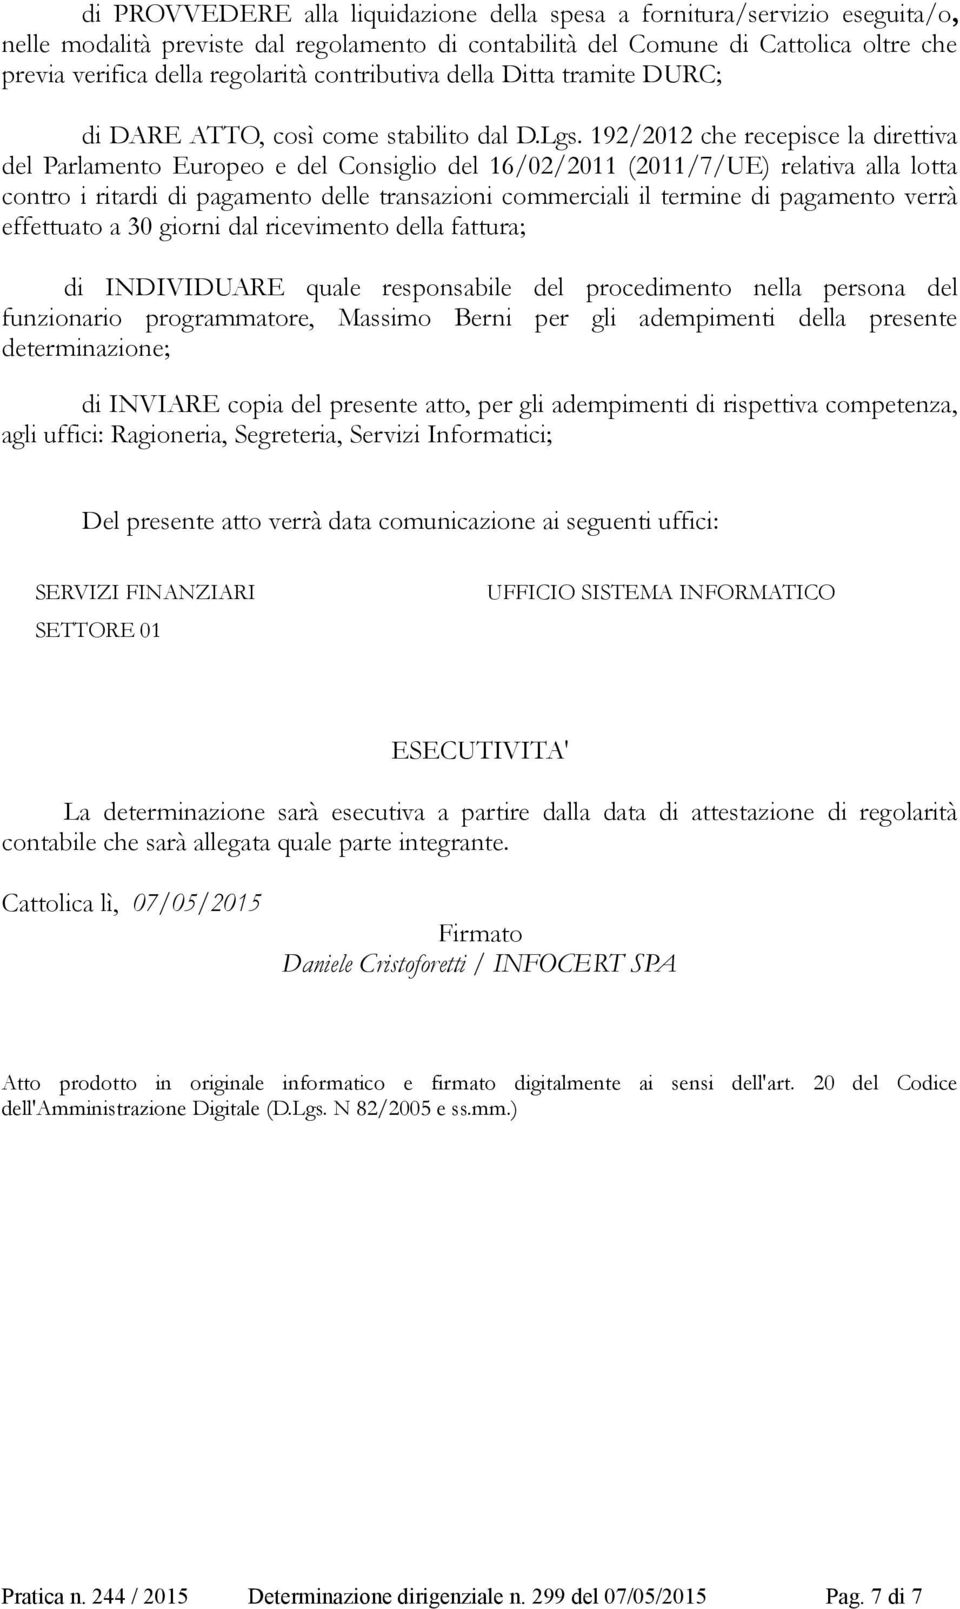 192/2012 che recepisce la direttiva del Parlamento Europeo e del Consiglio del 16/02/2011 (2011/7/UE) relativa alla lotta contro i ritardi di pagamento delle transazioni commerciali il termine di